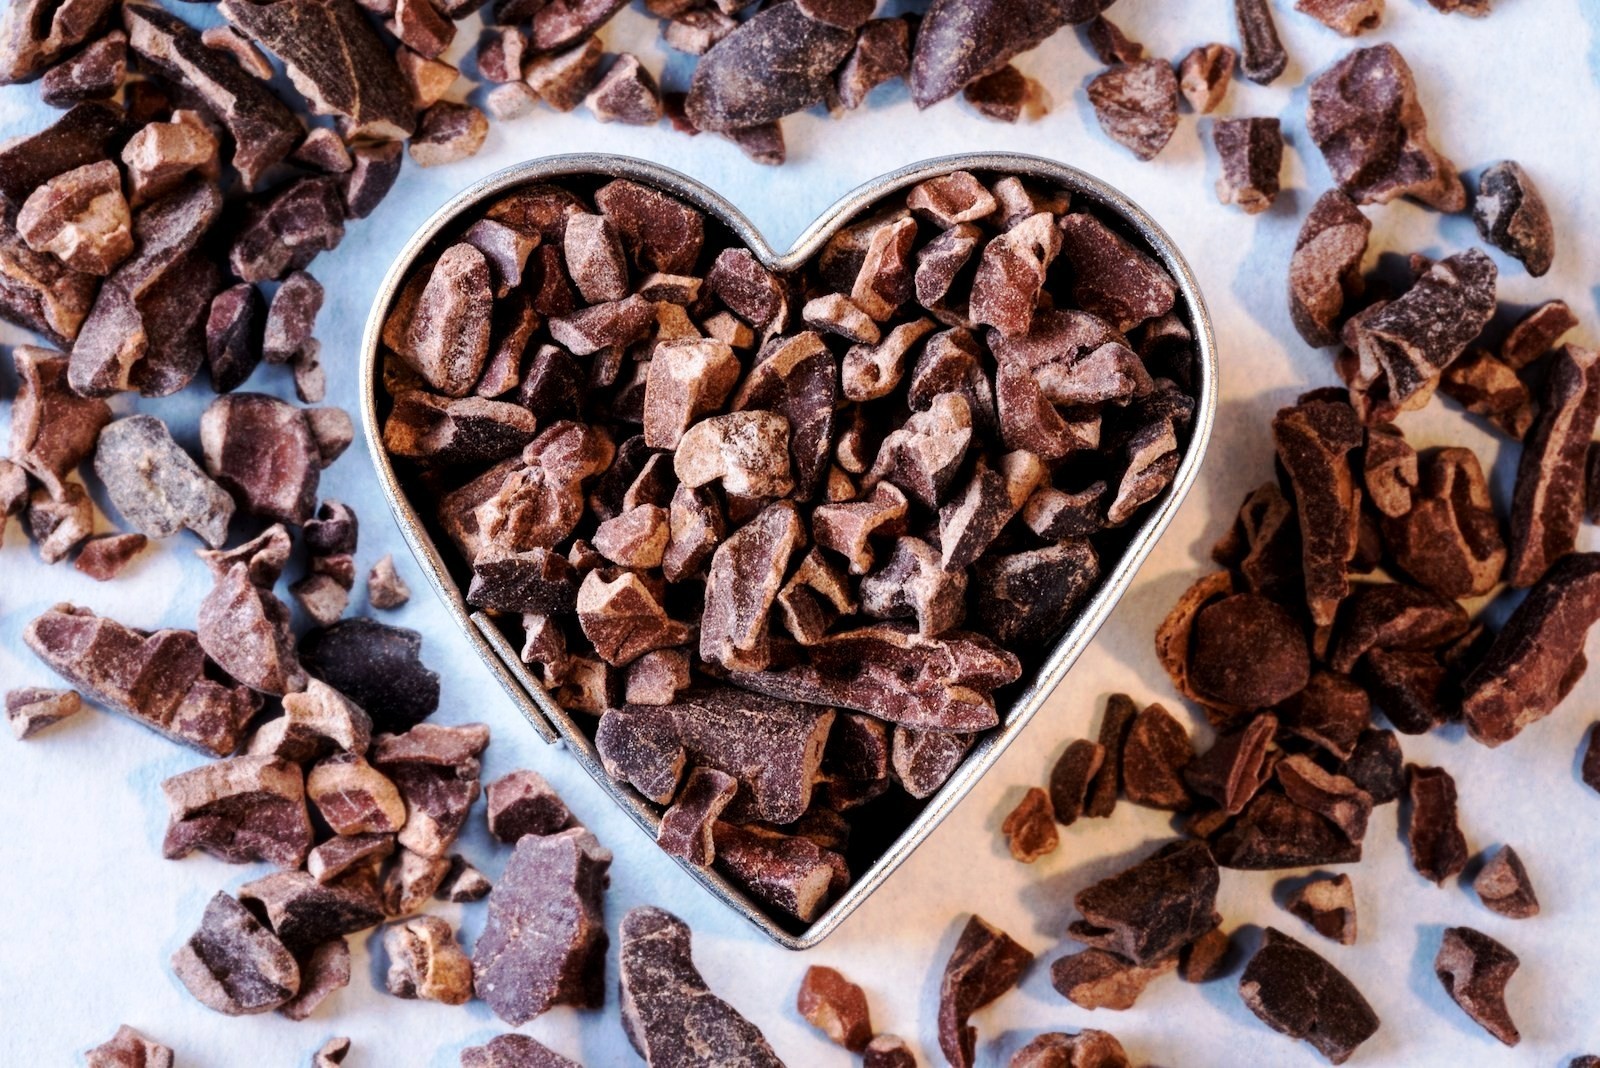 Wirkung und Anwendung von Kakaonibs, das neue Superfood